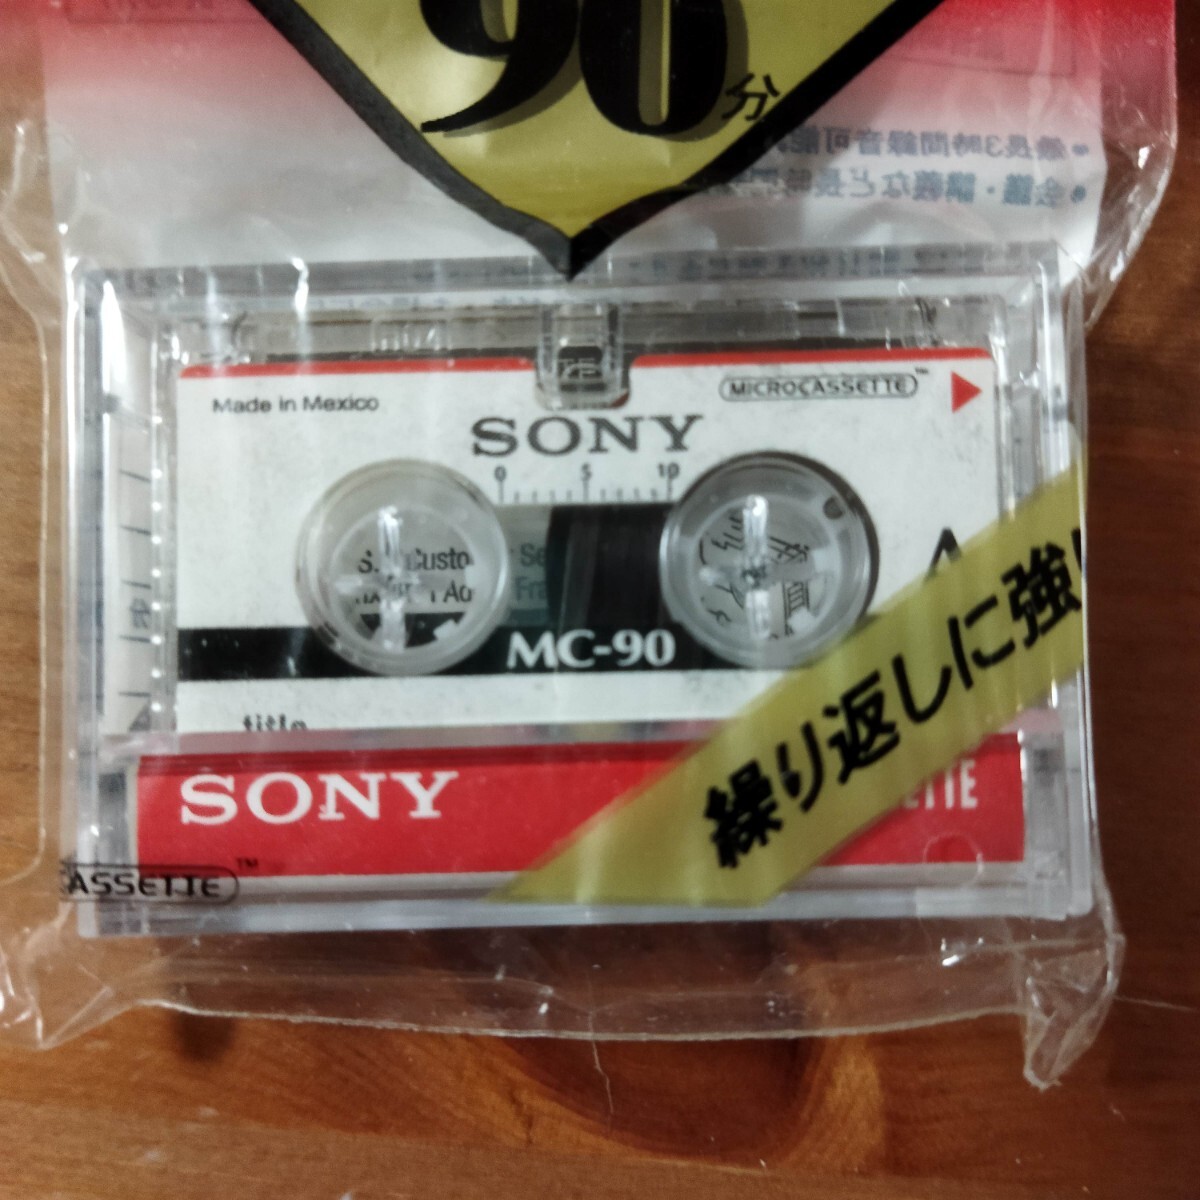  микро кассетная лента SONY MC-90B 90 минут нераспечатанный товар 